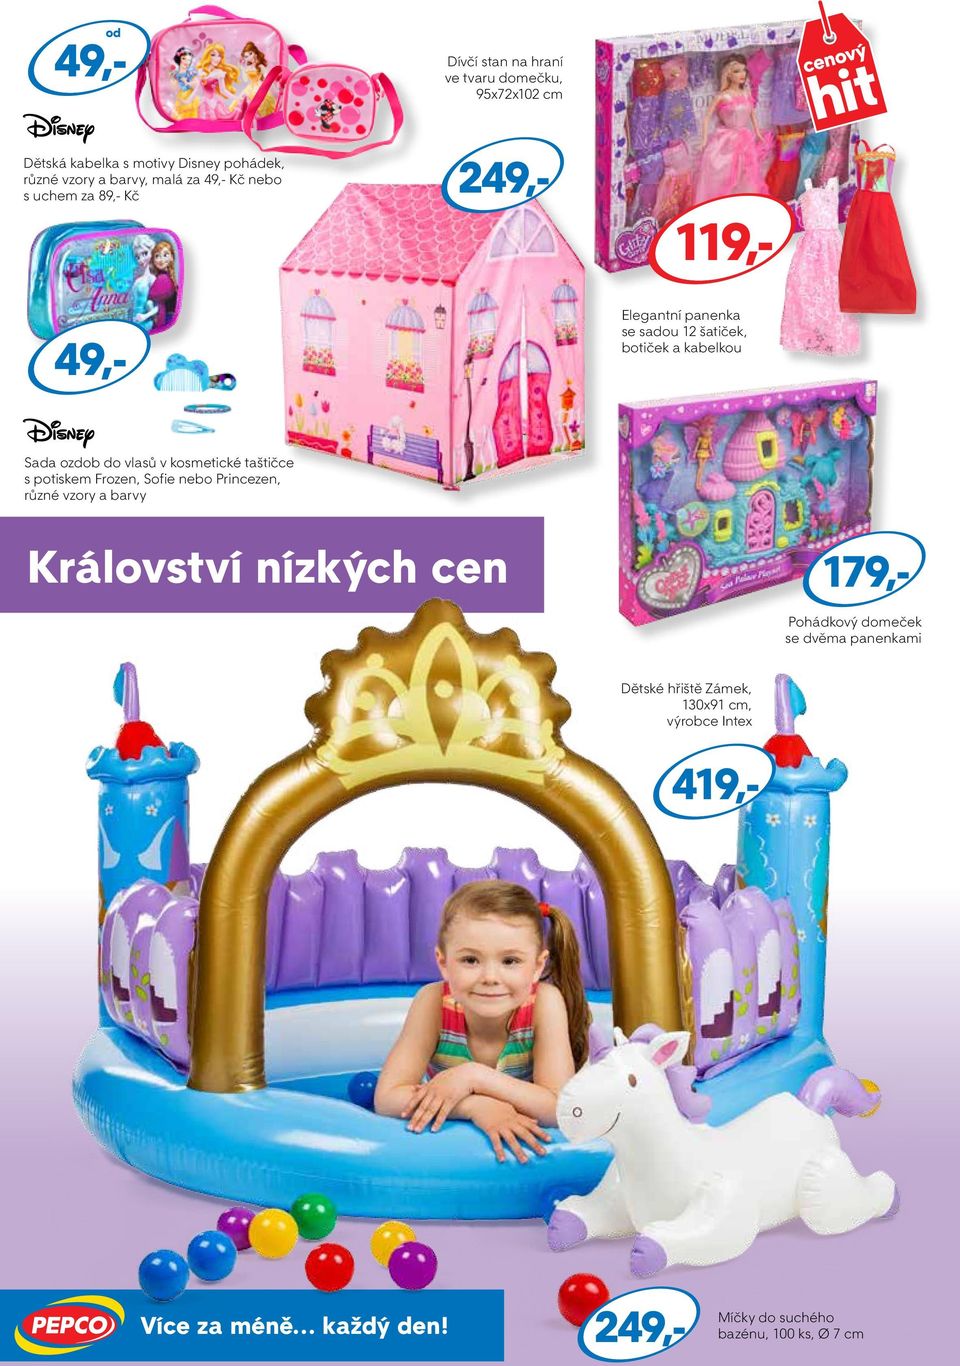 taštičce s potiskem Frozen, Sofie nebo Princezen, různé vzory a barvy Království nízkých cen Pohádkový domeček se dvěma